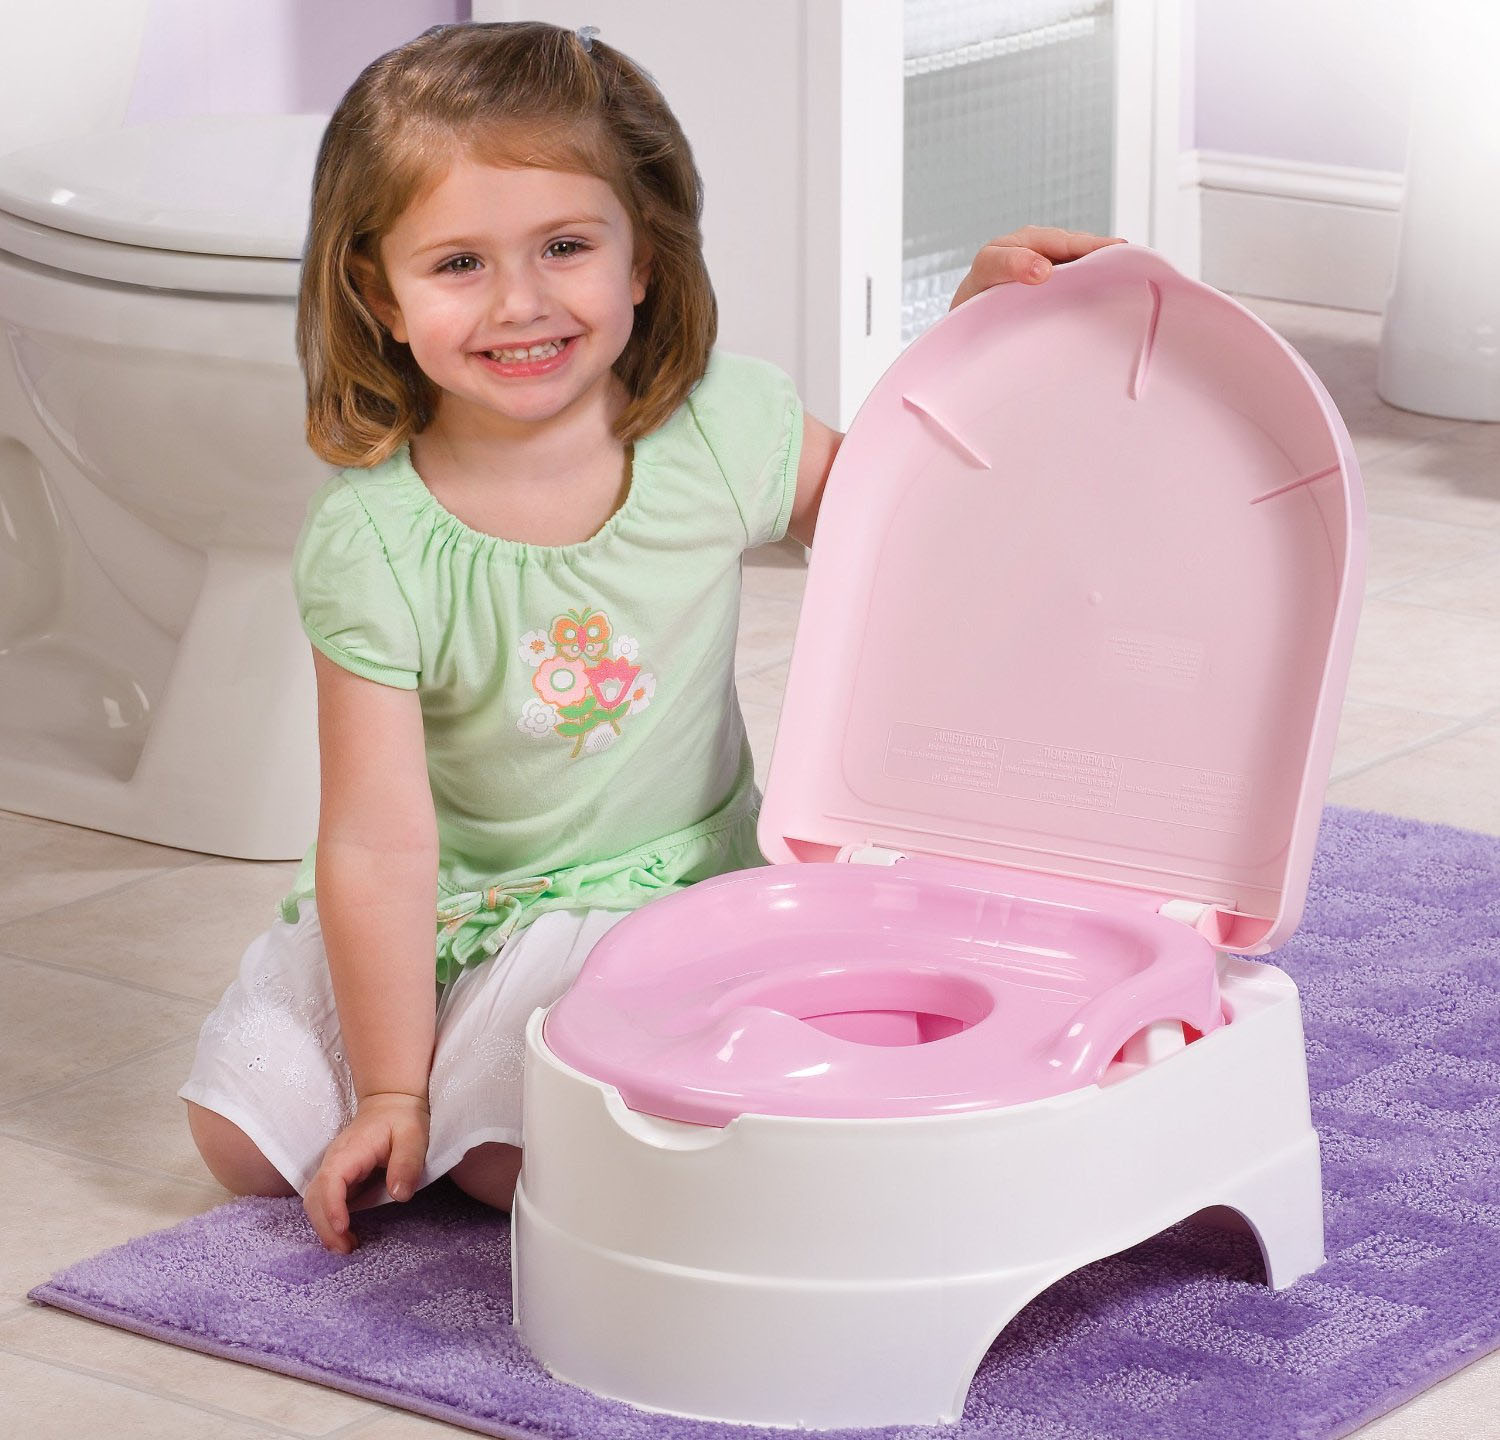 Khi trẻ chưa thể đi vệ sinh ở bồn cầu trong nhà, người lớn vẫn có thể dạy trẻ cách sử dụng bằng những bồn vệ sinh 'mini' thế này